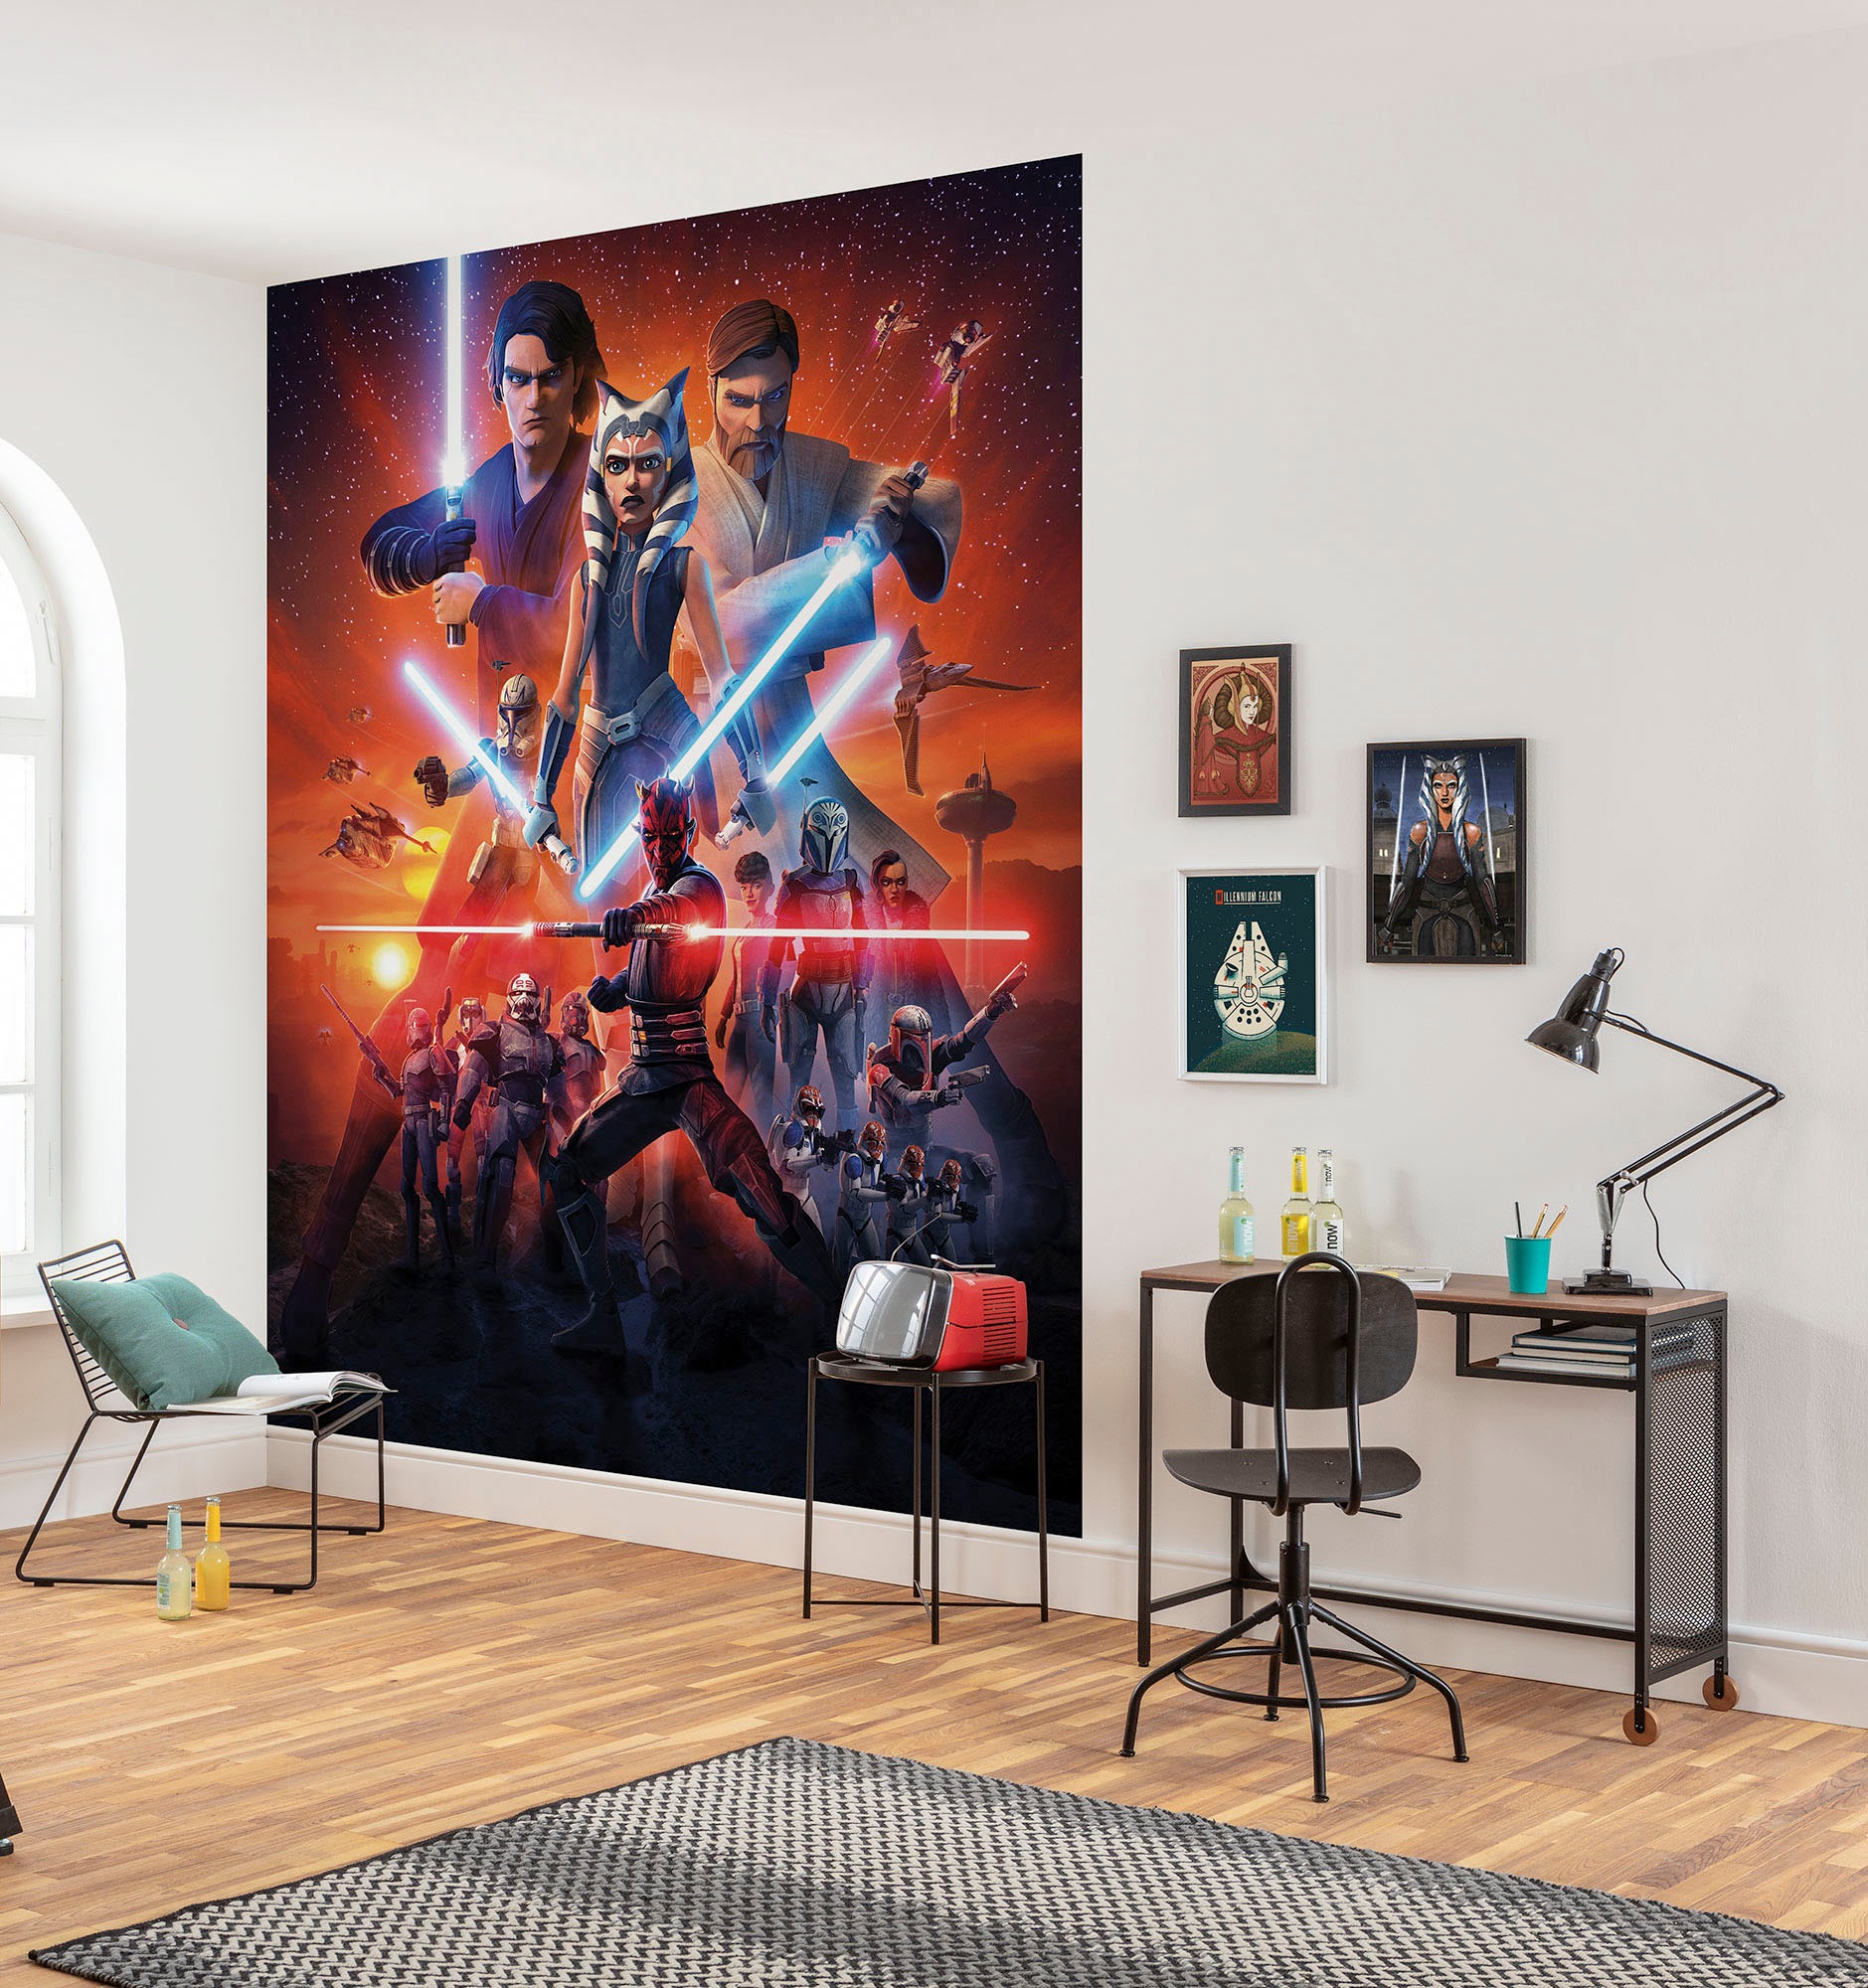 Komar Fototapete »Vlies Fototapete - Star Wars Clone Wars Mission - Größe 200 x 250 cm«, bedruckt